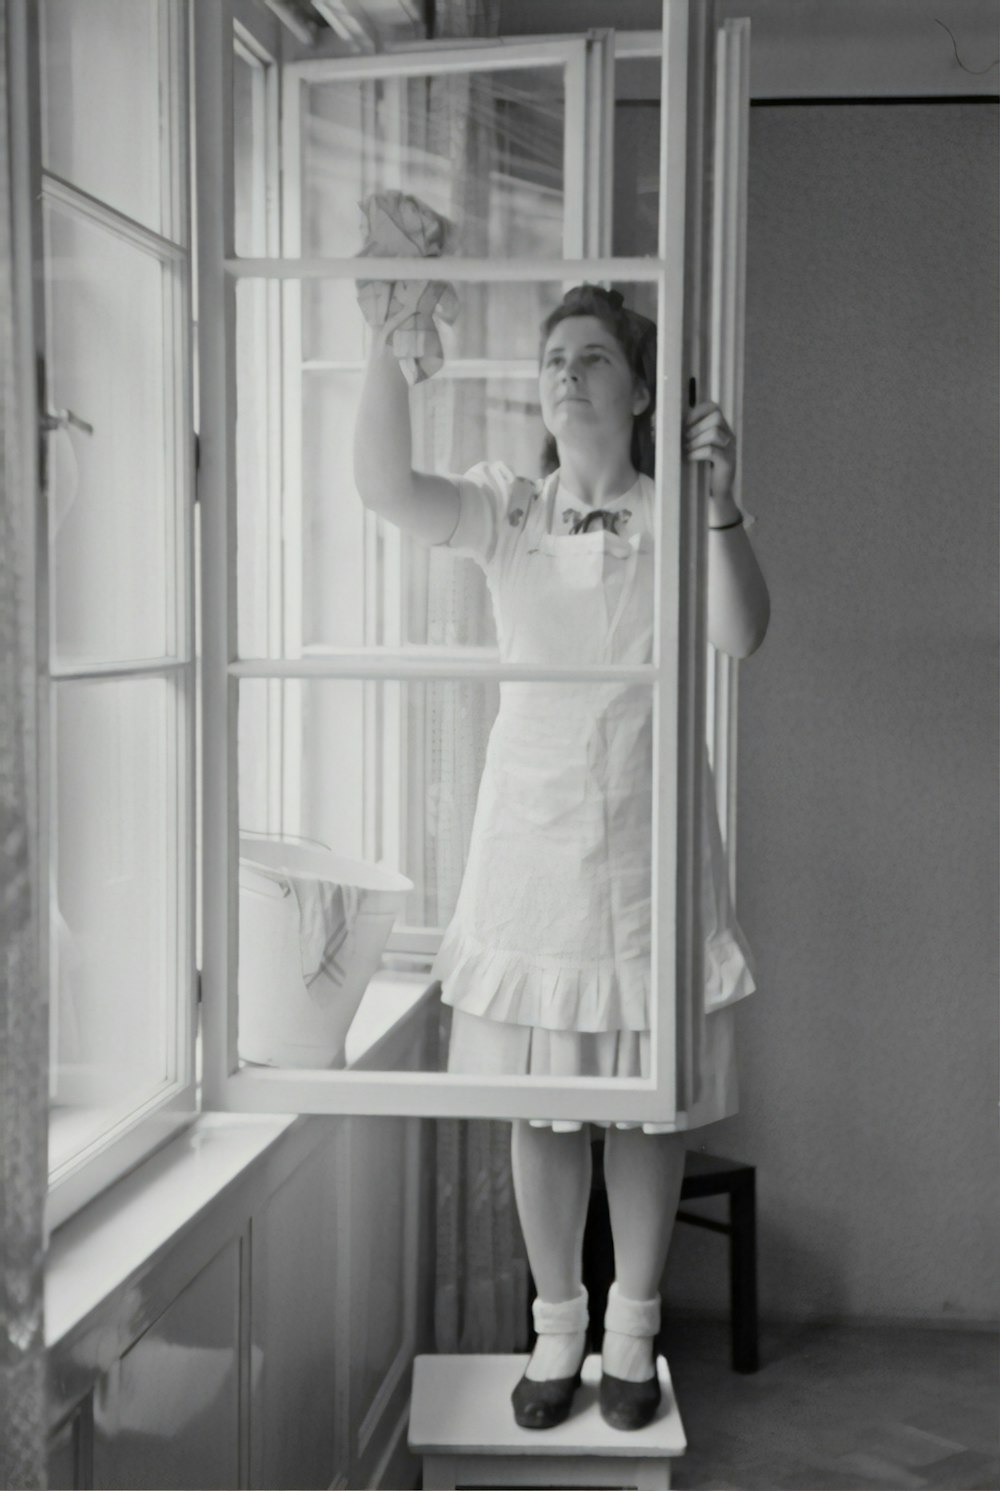 유리창을 청소하는 여자의 그레이스케일 사진